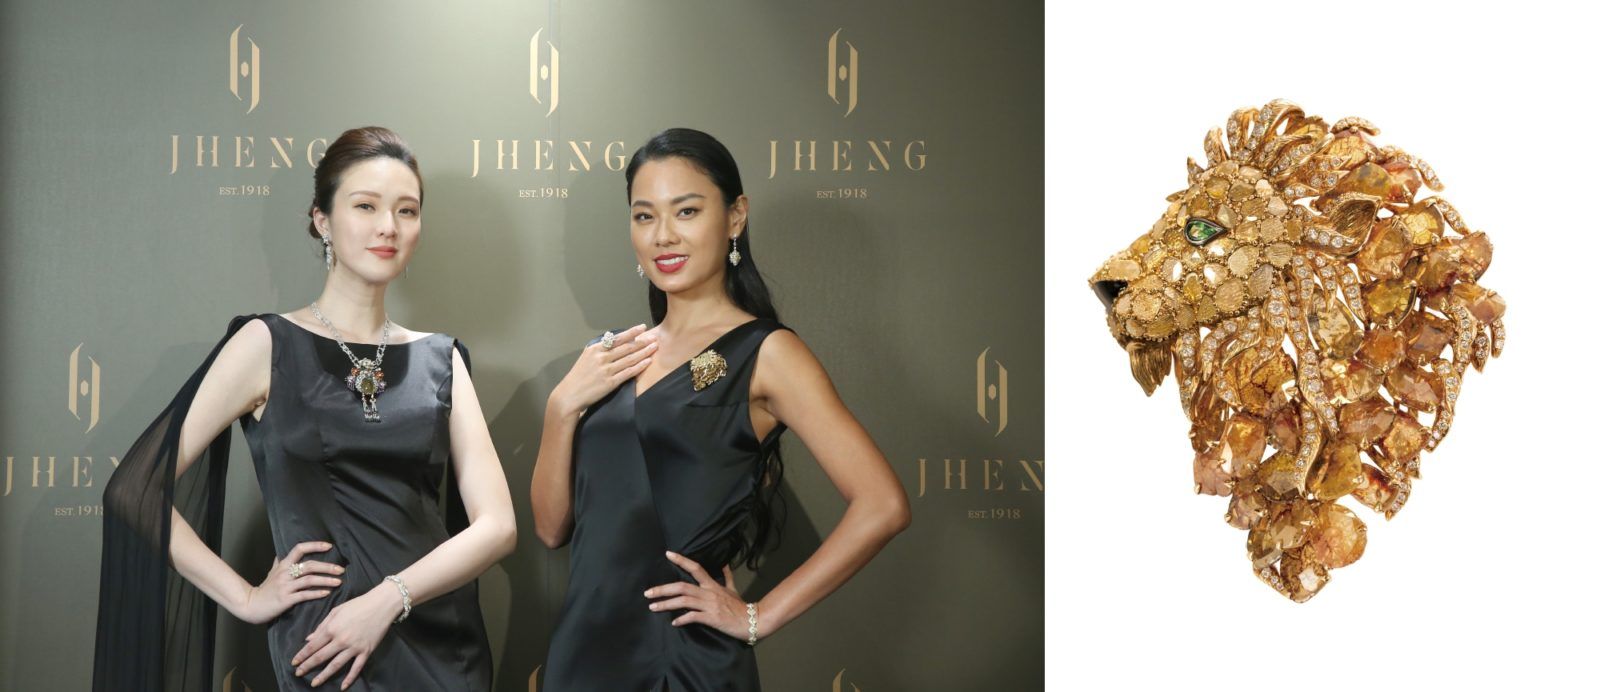 藝術珠寶 JHENG Jewellery 為台灣珠寶市場帶來前所未見的驚艷之作